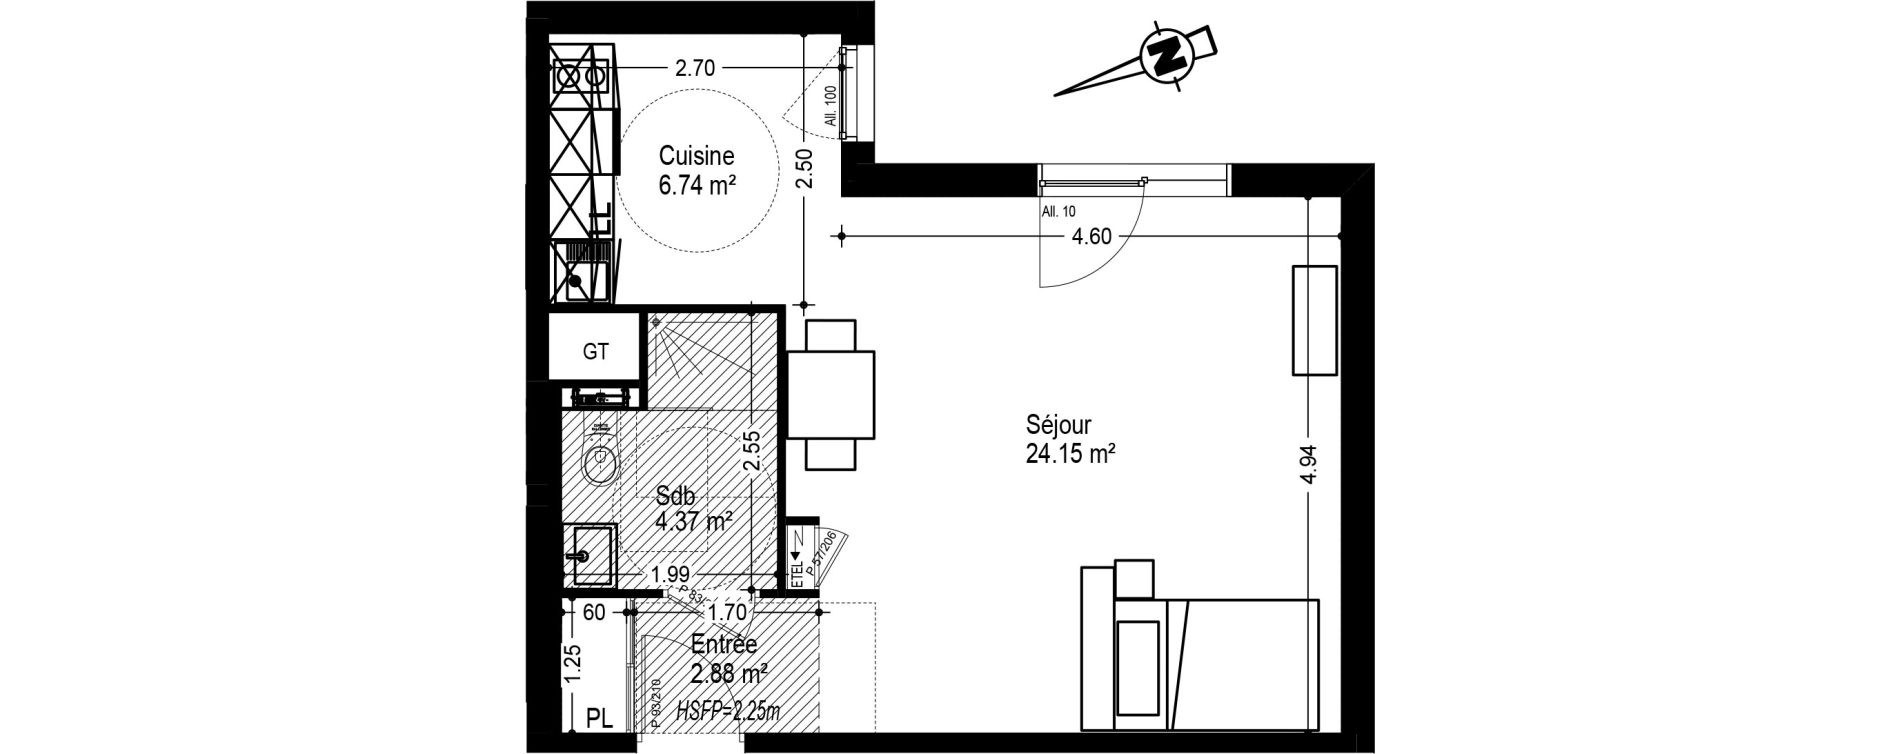  Appartement  T1  meubl  de 38 14 m2 RDC E Courtille Sainte 